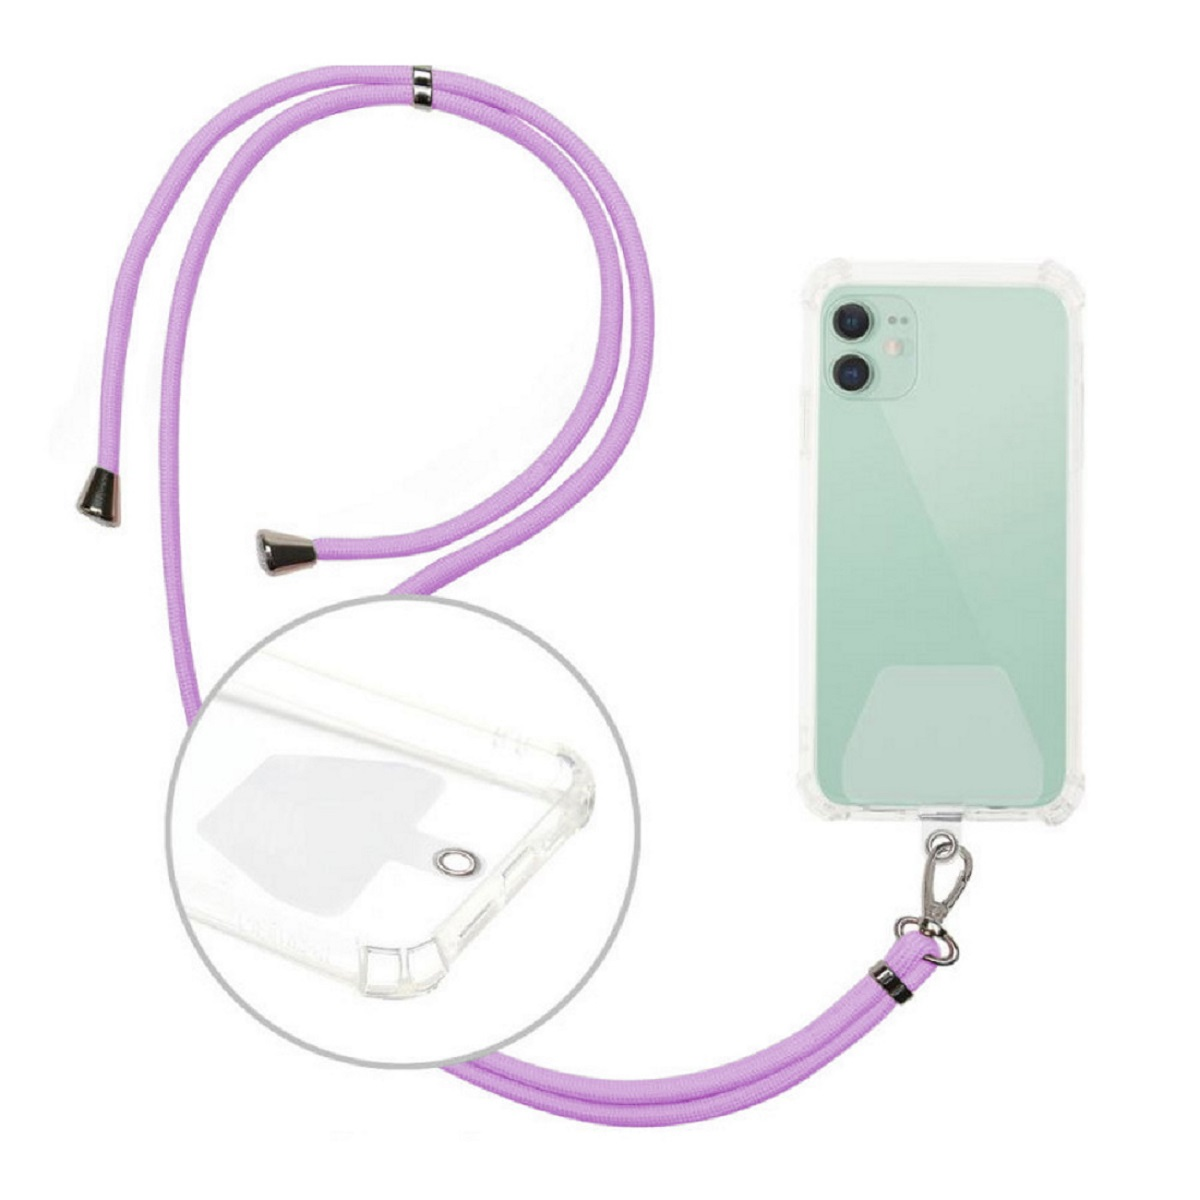 zum mit Schnur Violett COFI Umhängen Handykette, Handyhalterung kompatibel Smartphones Handykette Violett